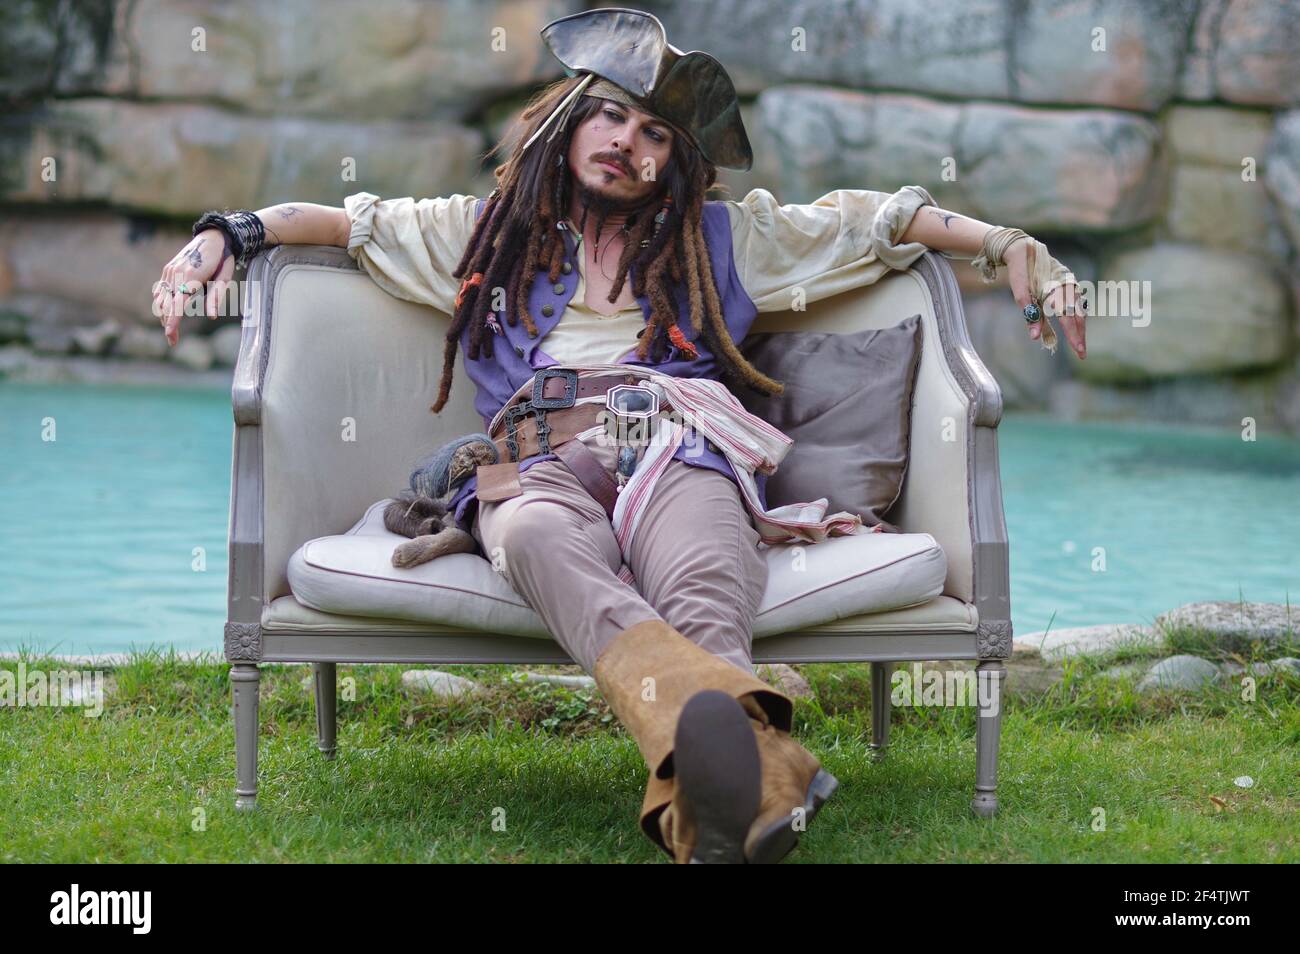 Jack sparrow costume immagini e fotografie stock ad alta risoluzione - Alamy